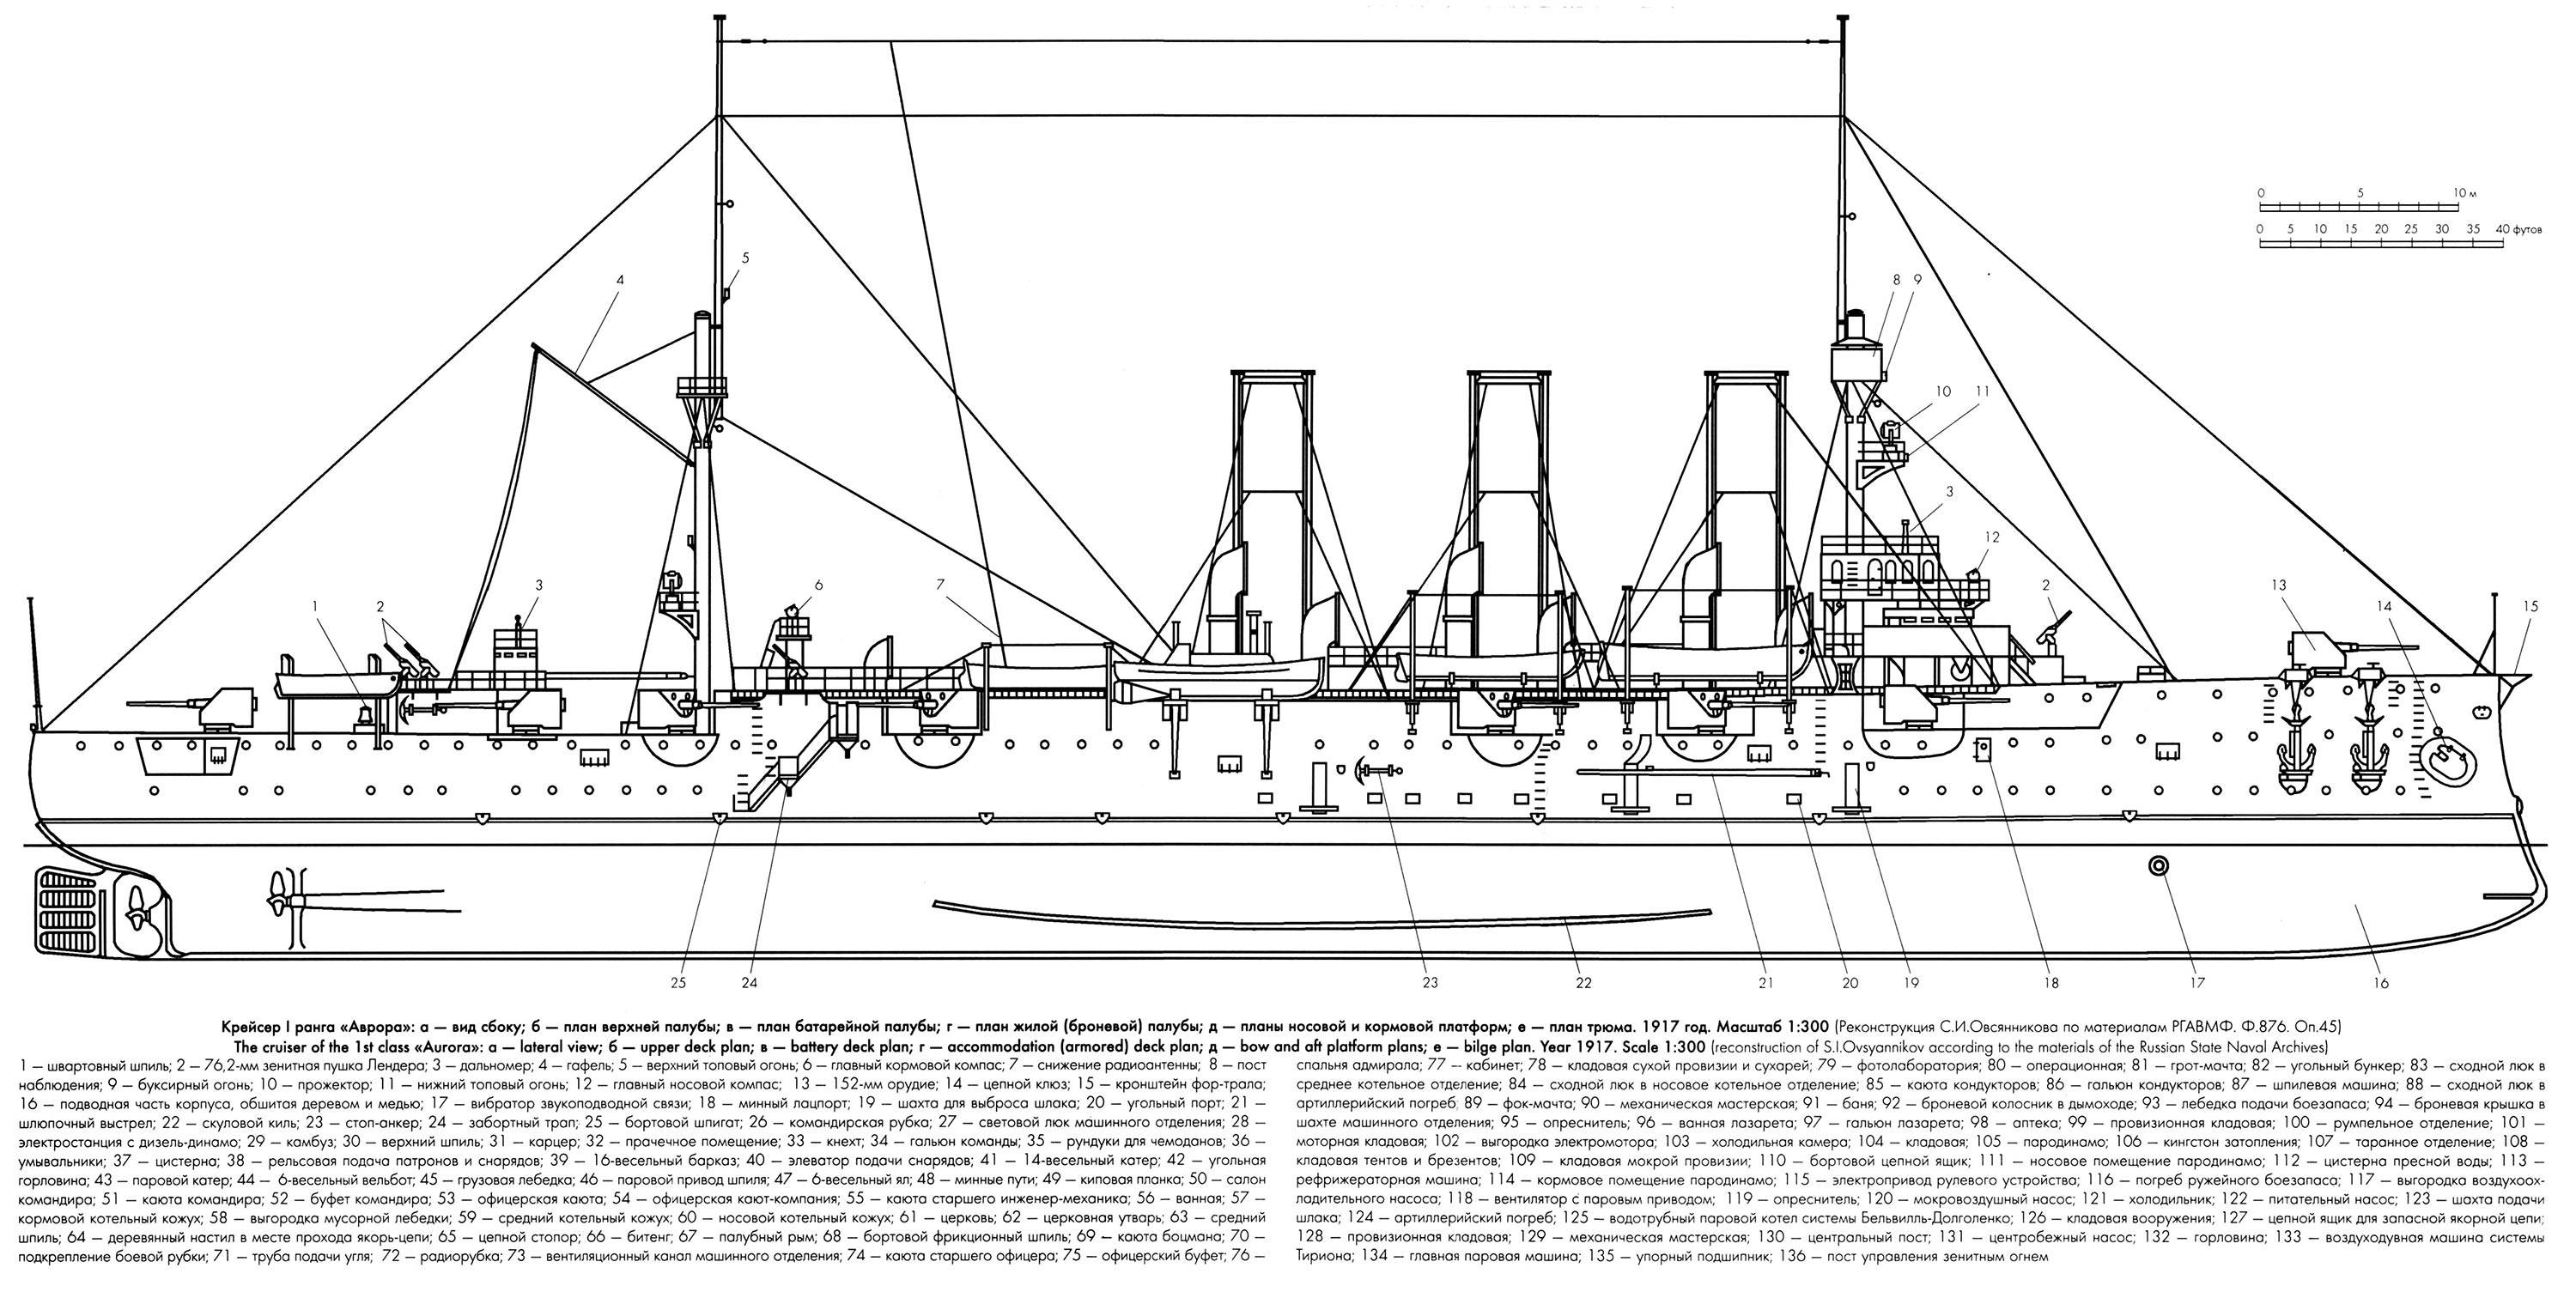 Крейсер «аврора» — история корабля «революции»